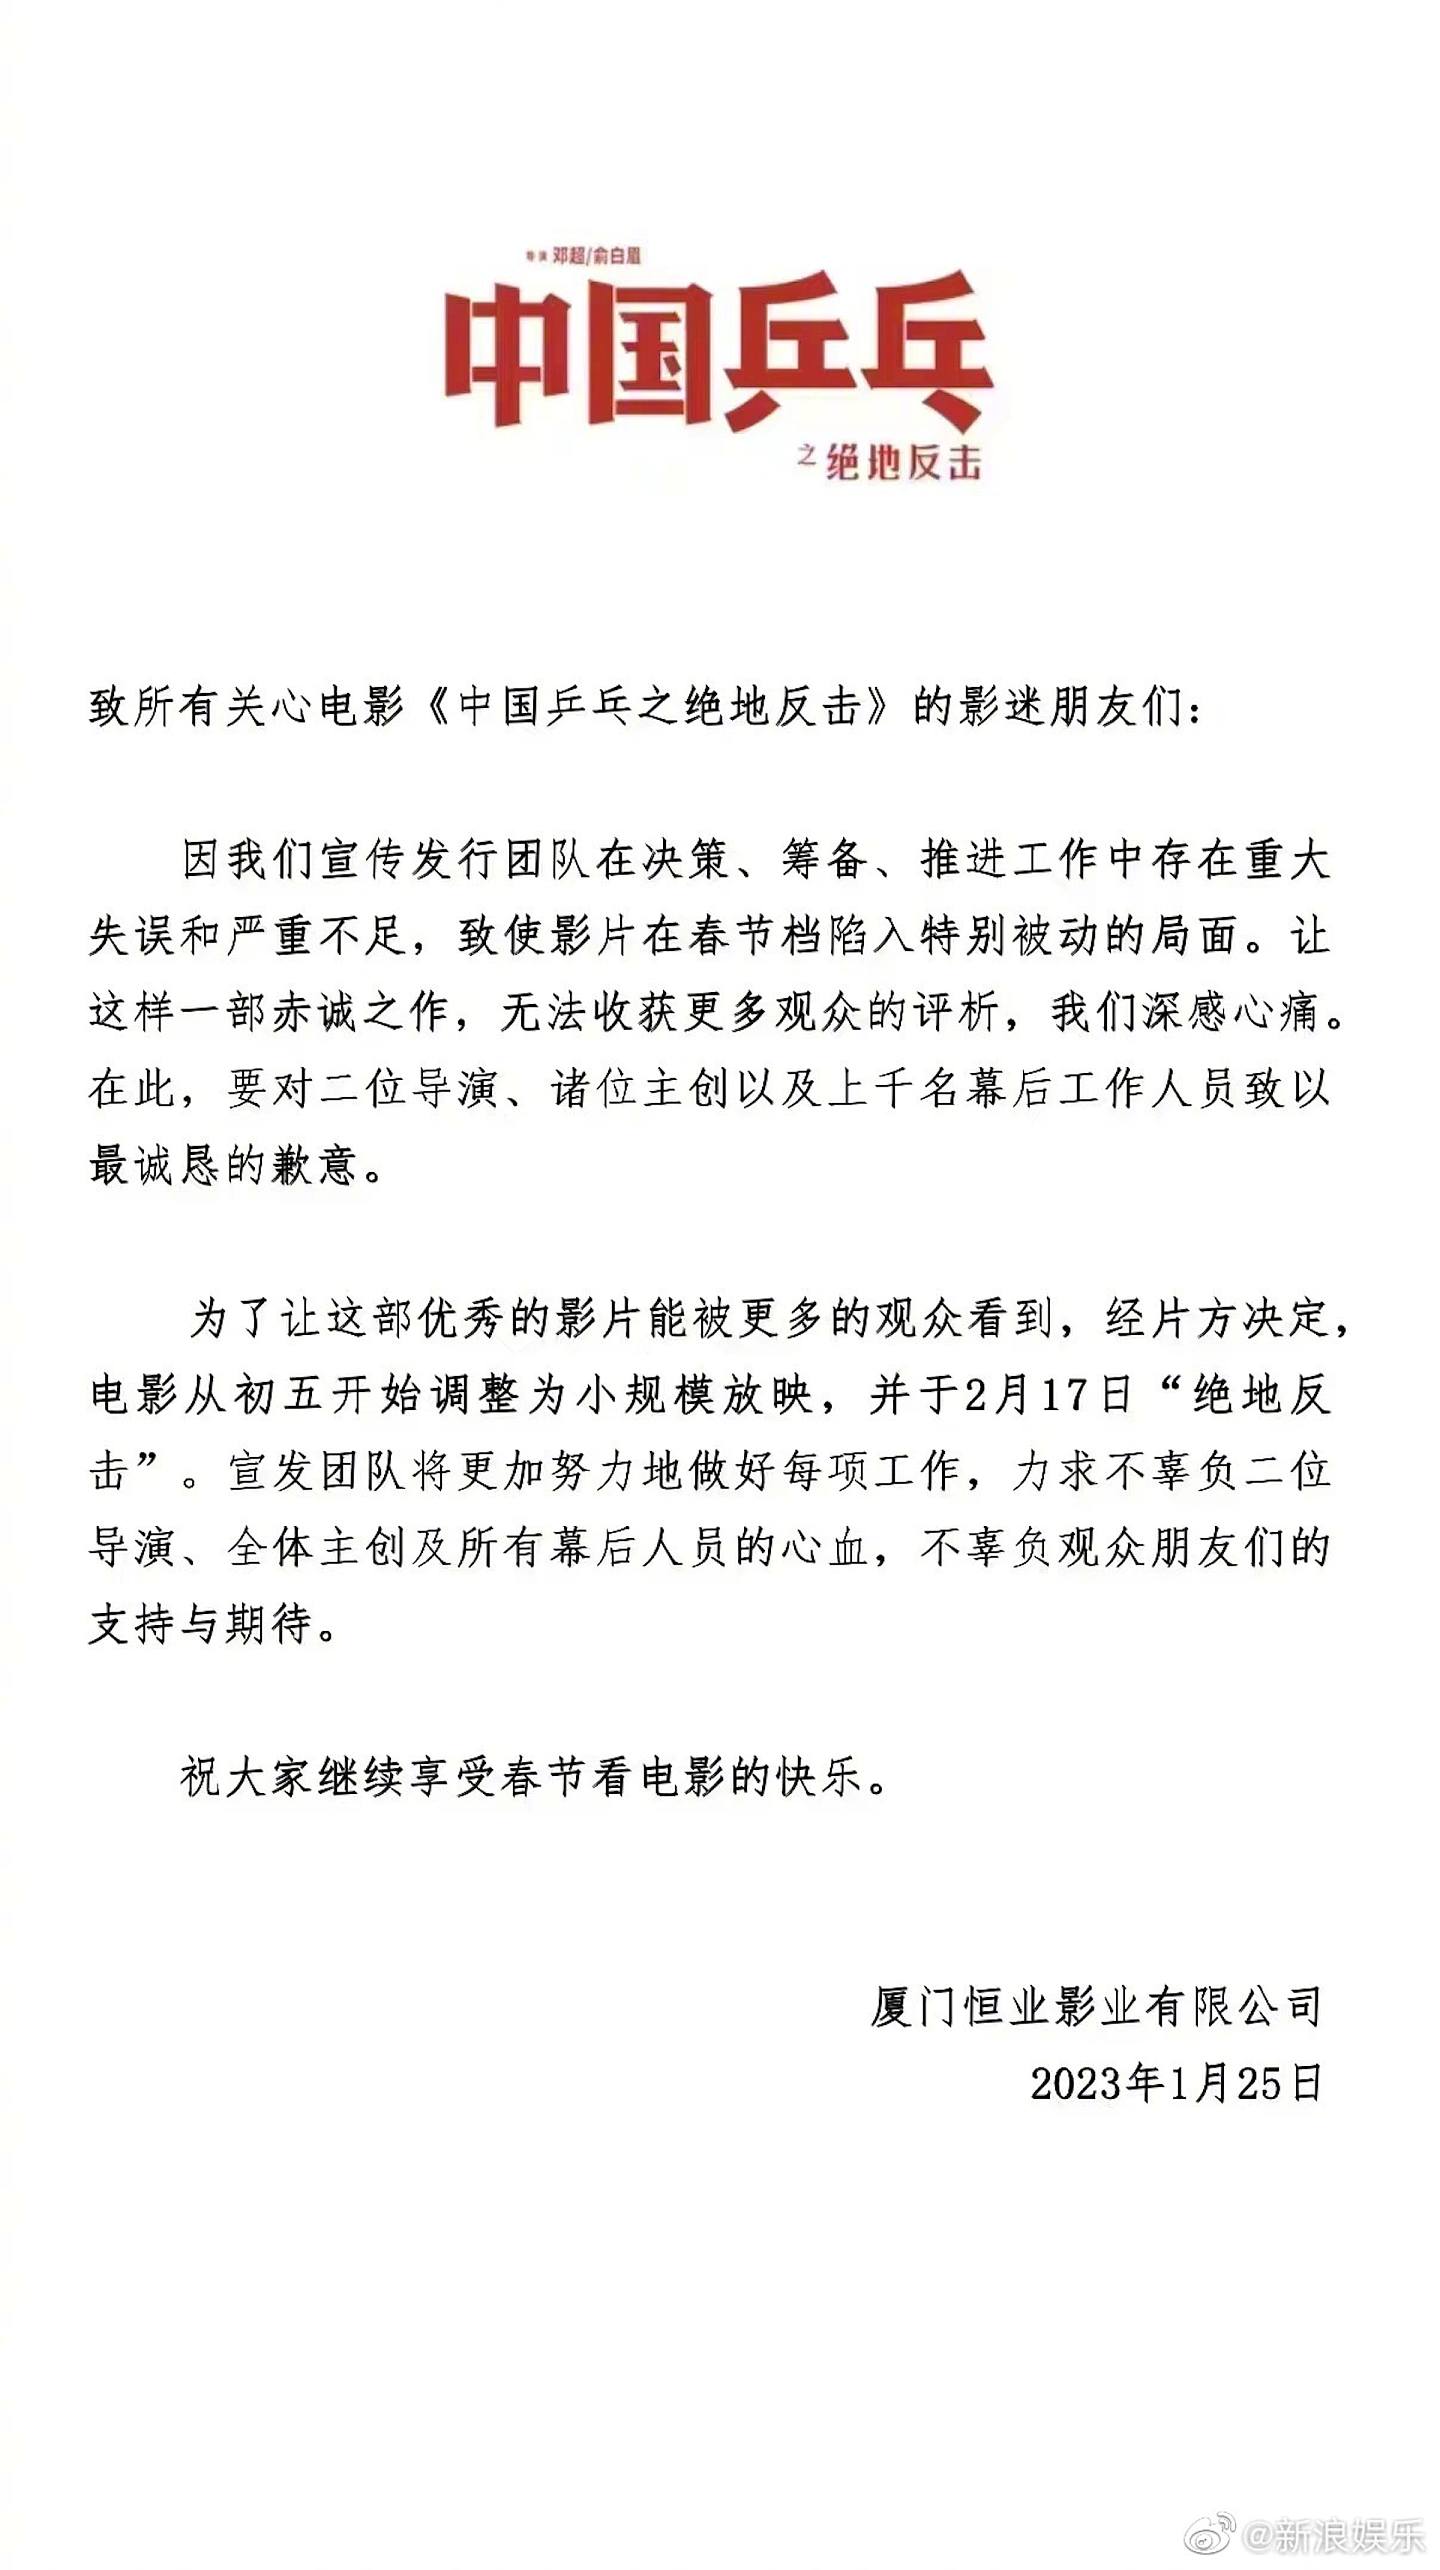 《中国乒乓之绝地反击》决定延期至2月17日上映。 (微博)